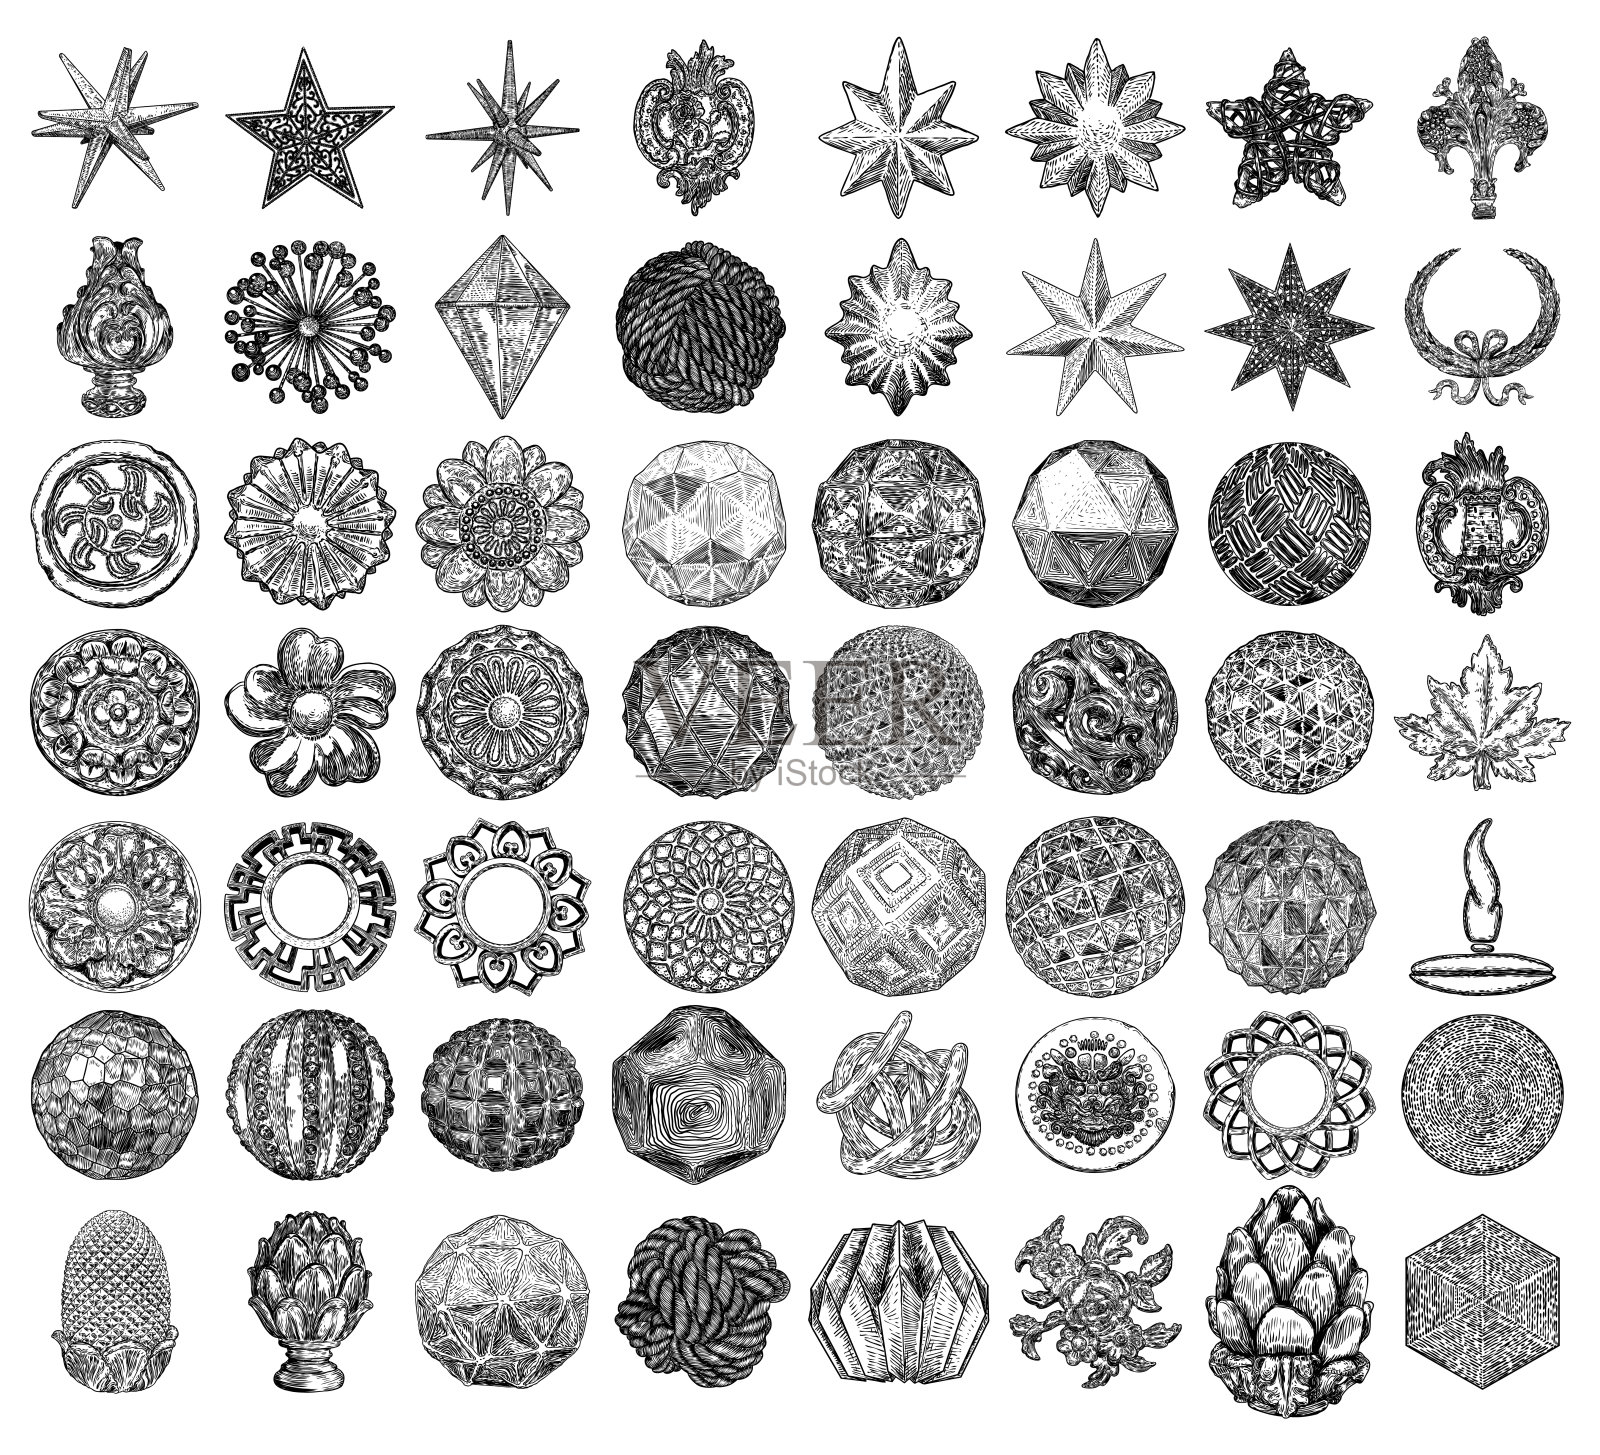 一套复古风格的花圆形铸造石头和华丽的天花板设计元素。低聚几何形状的星星晶体，用于圣诞节和其他装饰图纸。向量。插画图片素材